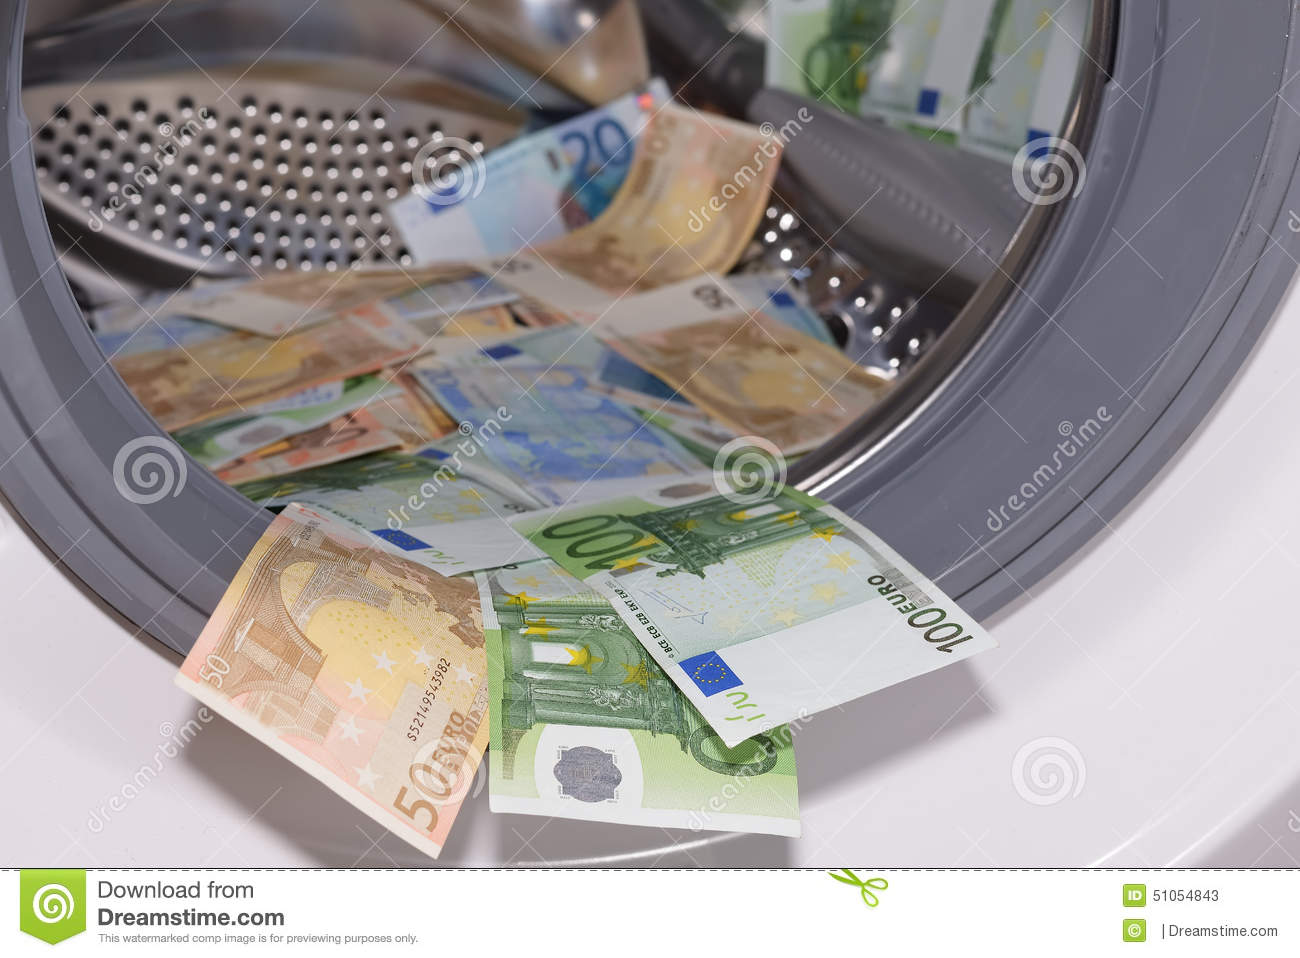 euros-dentro-da-mquina-de-lavar-conceito-da-lavagem-de-dinheiro-51054843.jpg